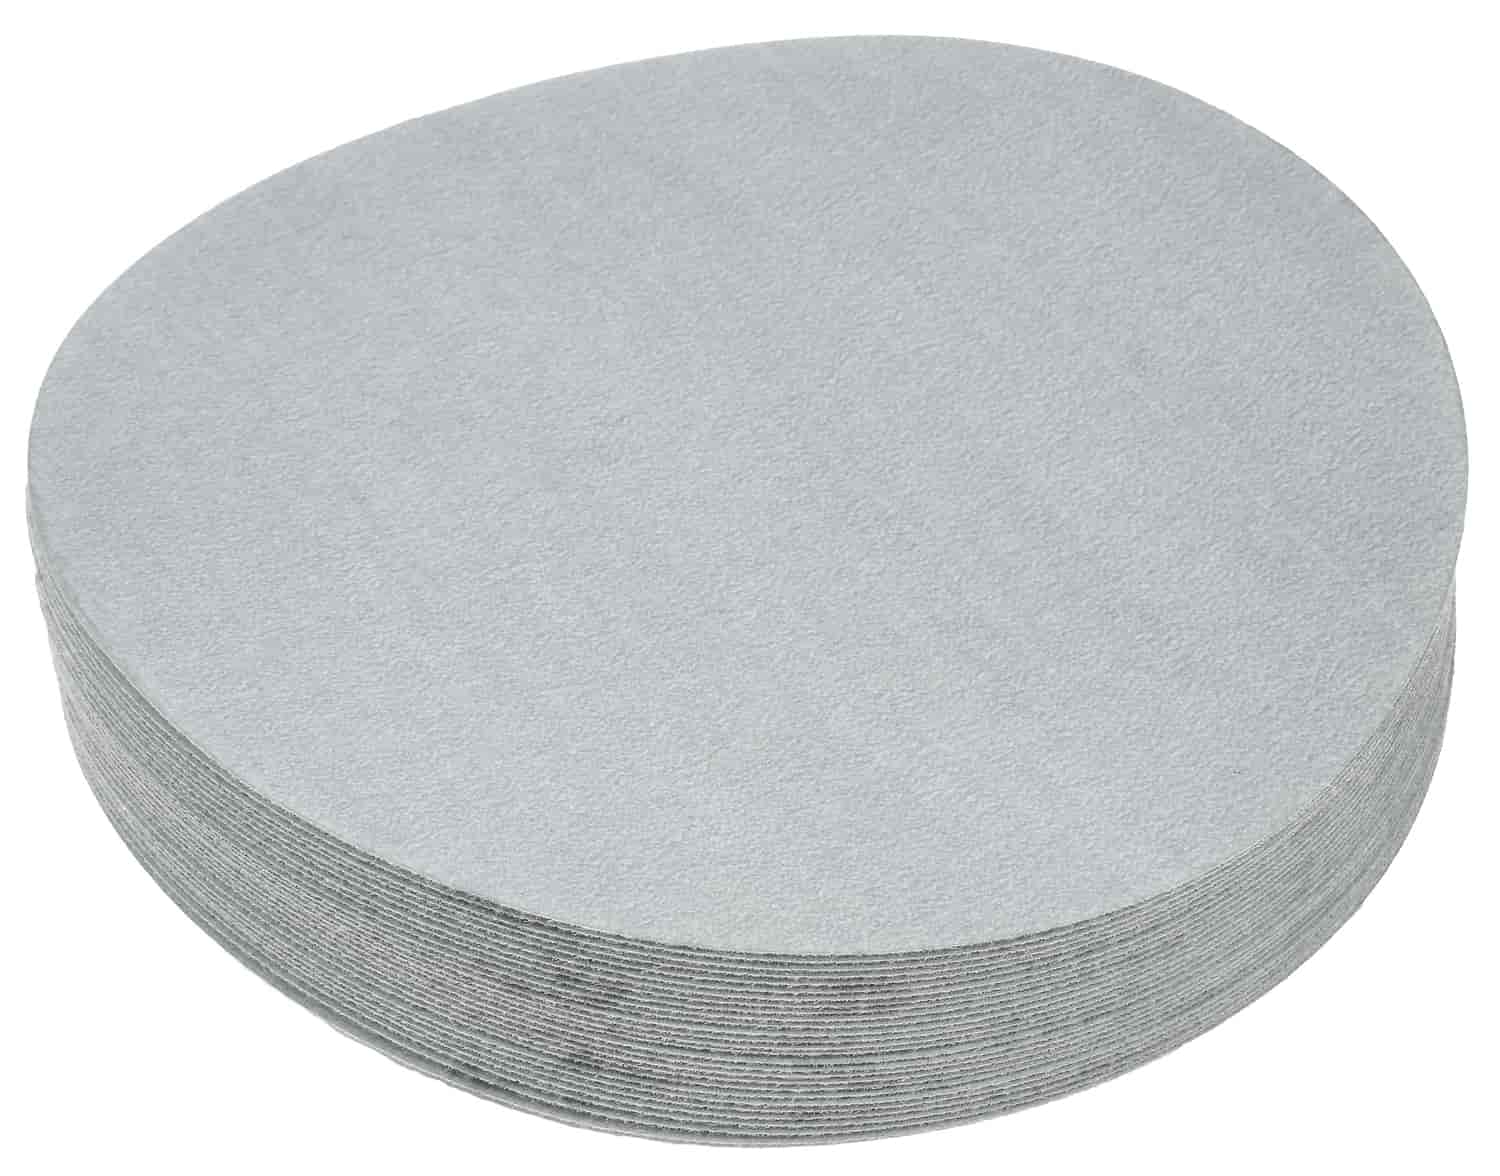 Automotive Sandpaper Discs [1200 Grit]